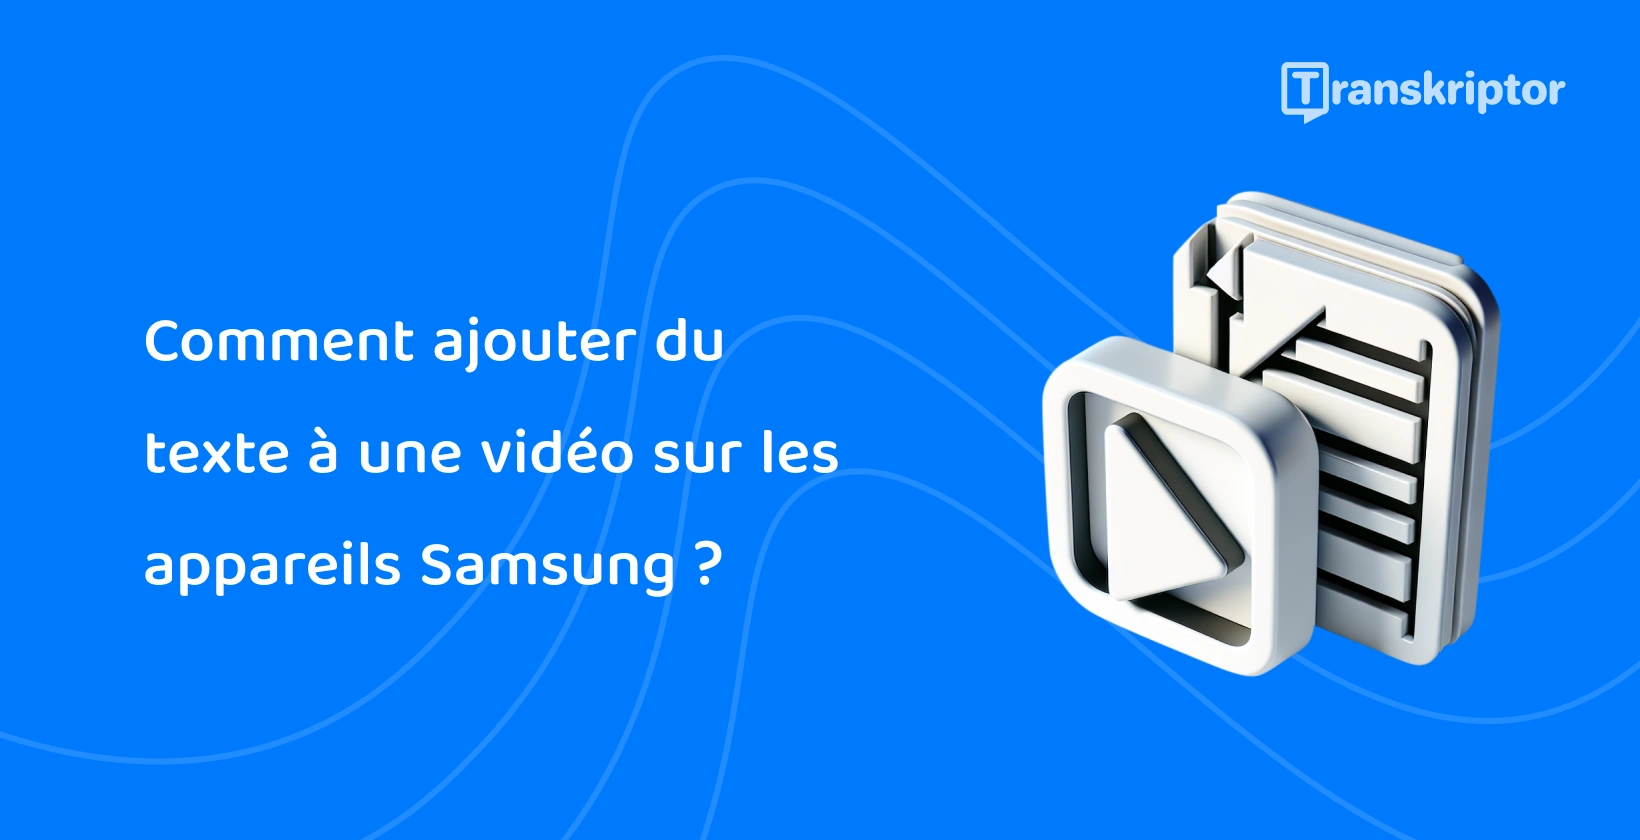 Icônes 3D de texte et de vidéo sur l’écran d’un appareil Samsung pour des tutoriels sur l’ajout de légendes et de titres aux vidéos.